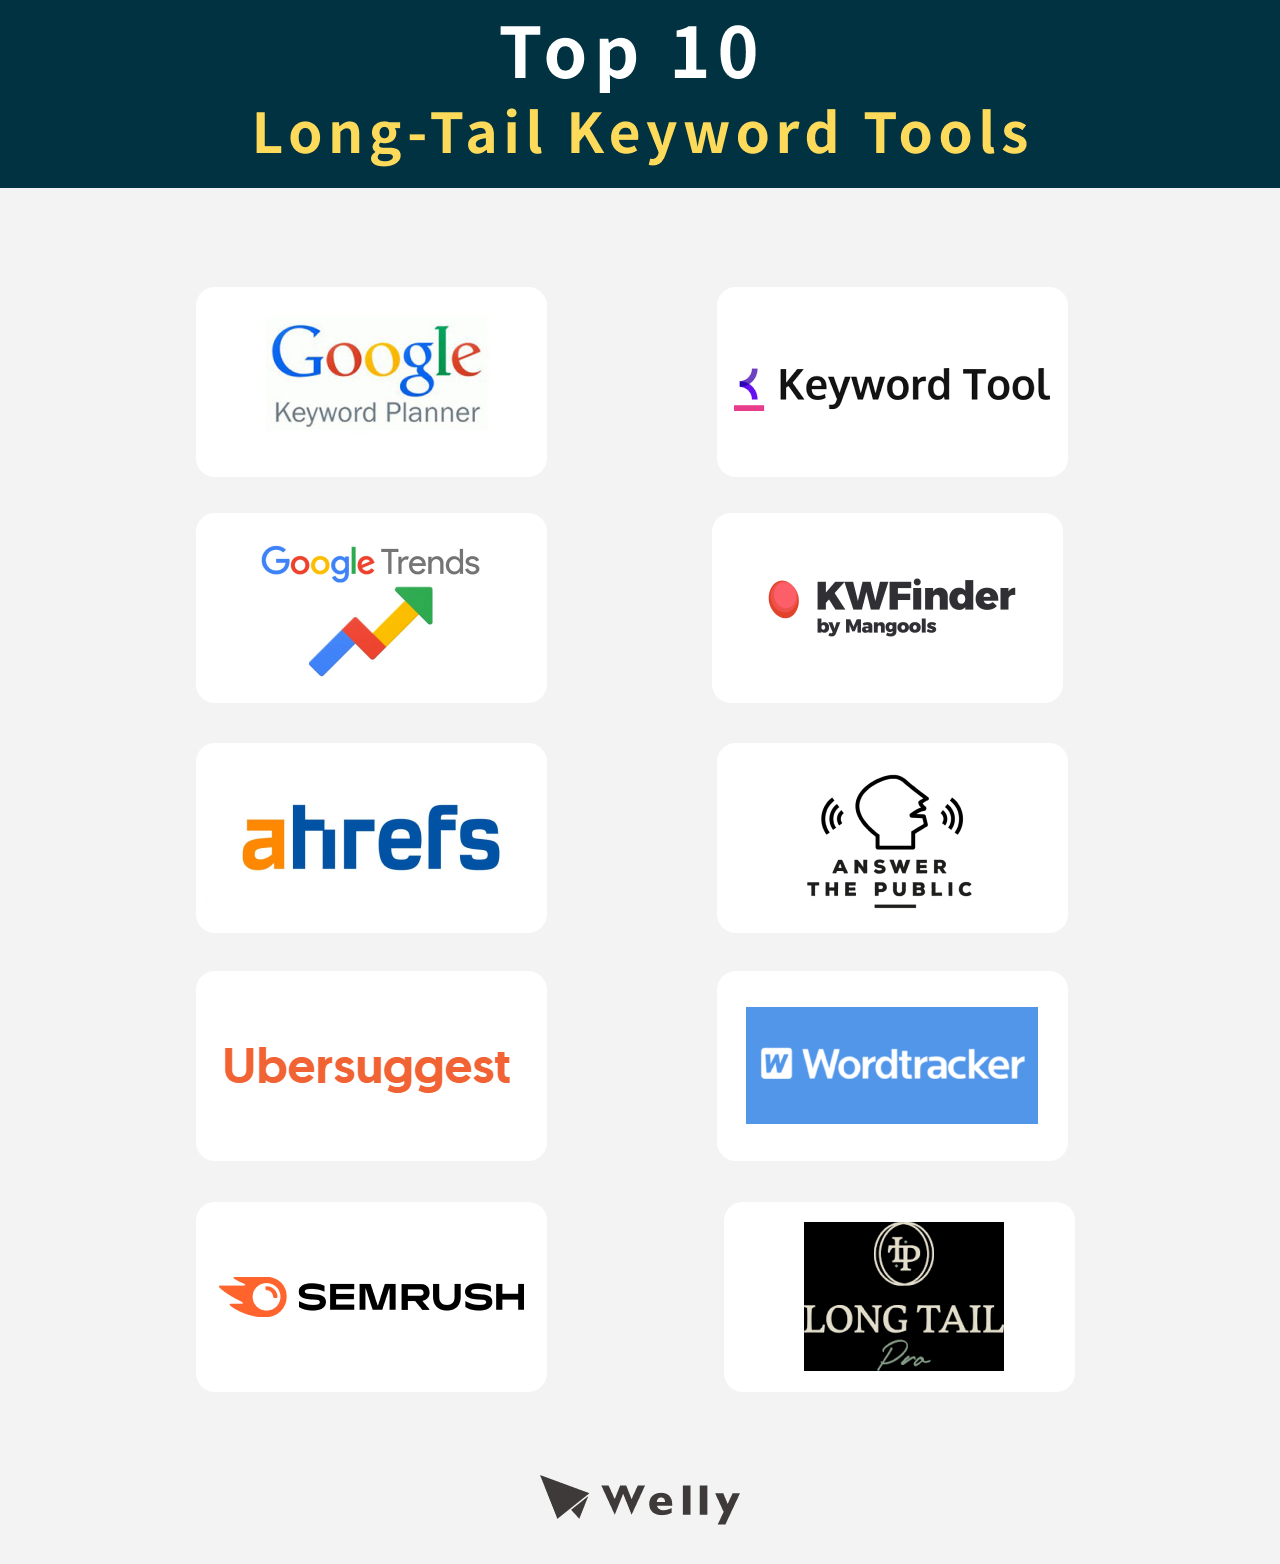 Top 10 Long-Tail Keyword Tools